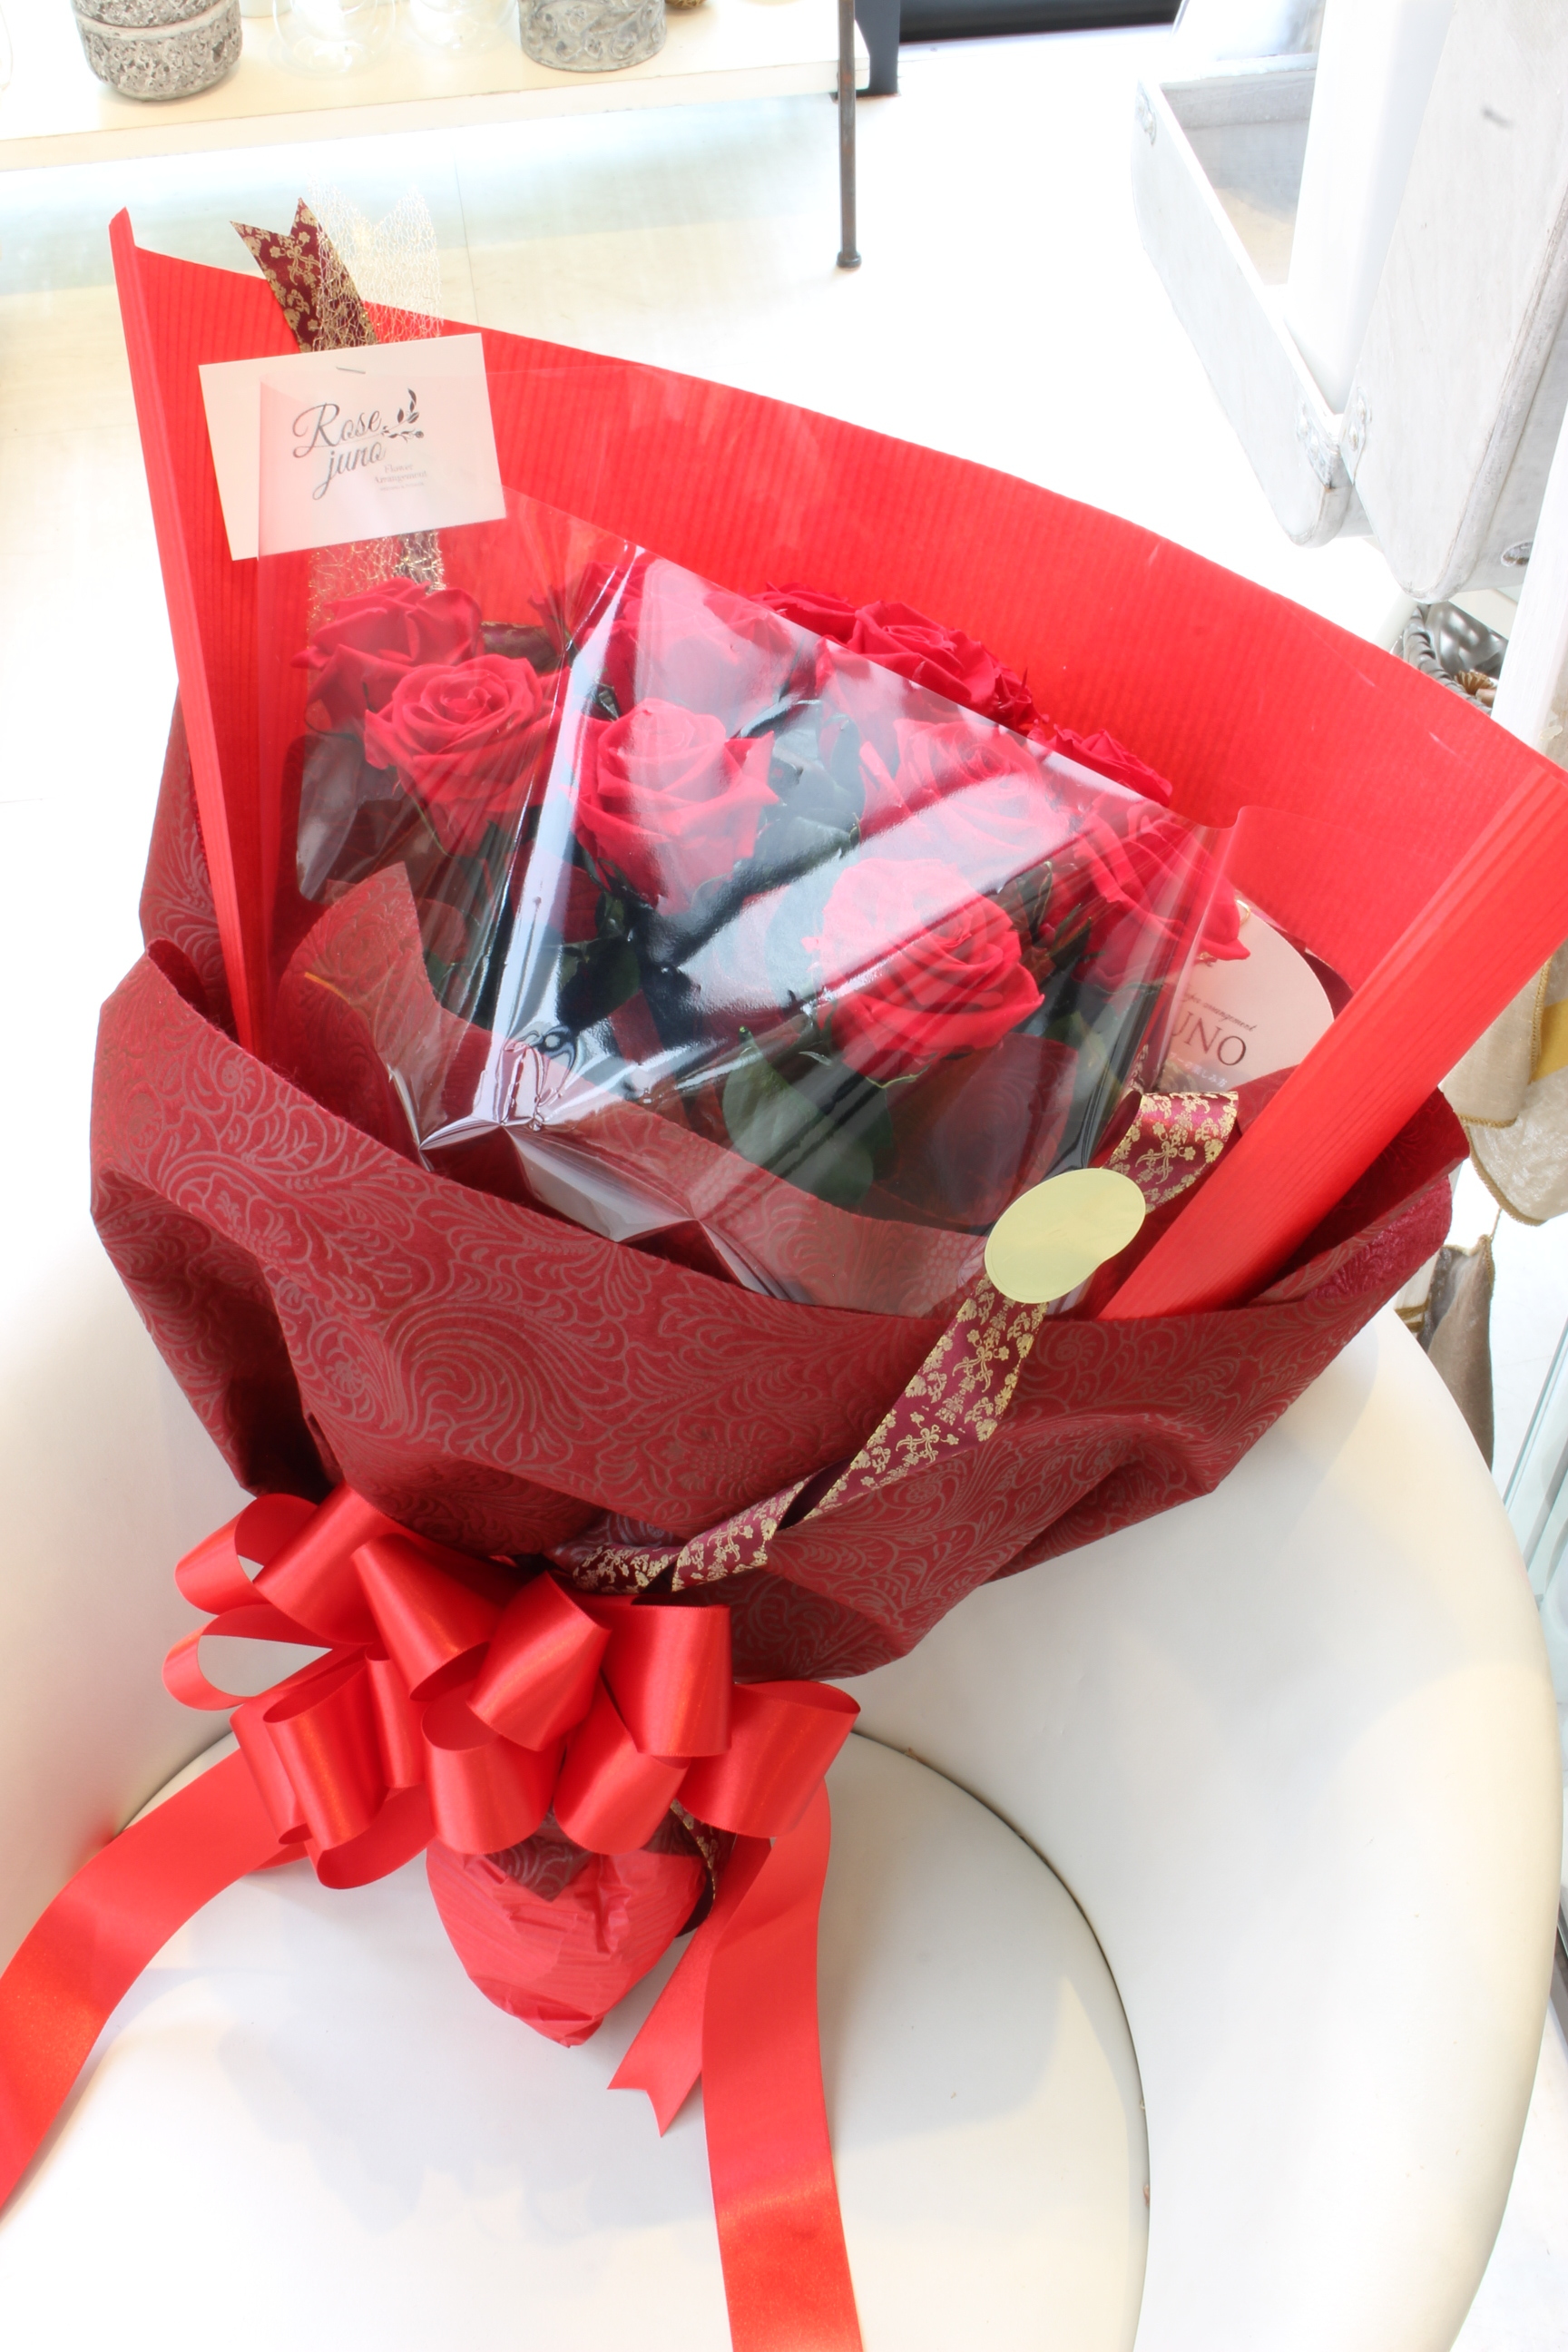 12本の赤薔薇の花束 ダーズンローズ 福岡のプリザーブドフラワー専門店 Rosejunoローズユノwebshop ネットショッピング